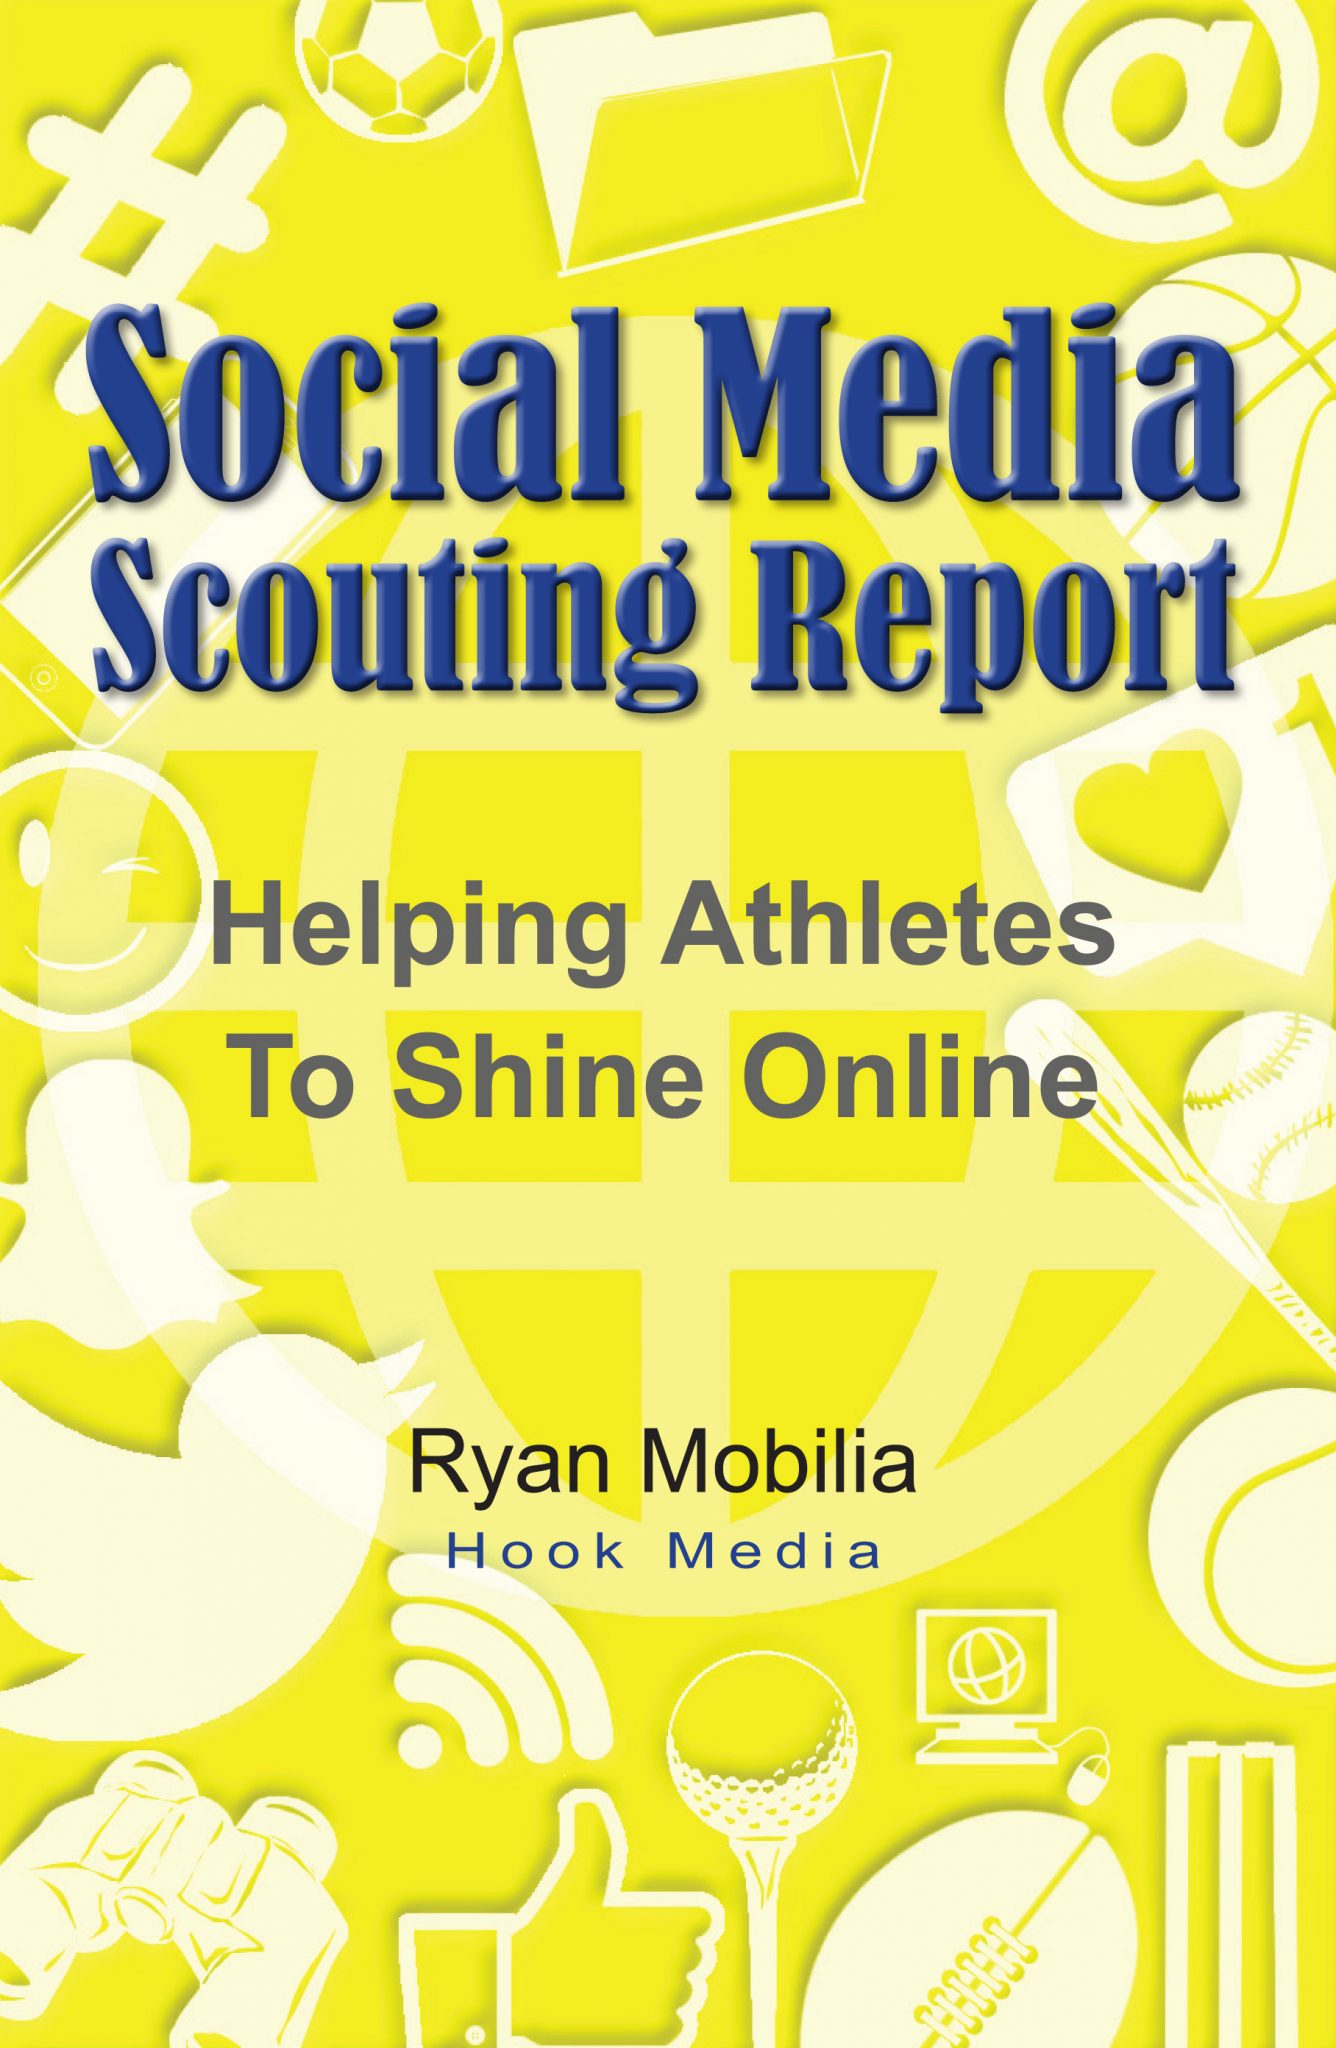 Social Media Scouting Report